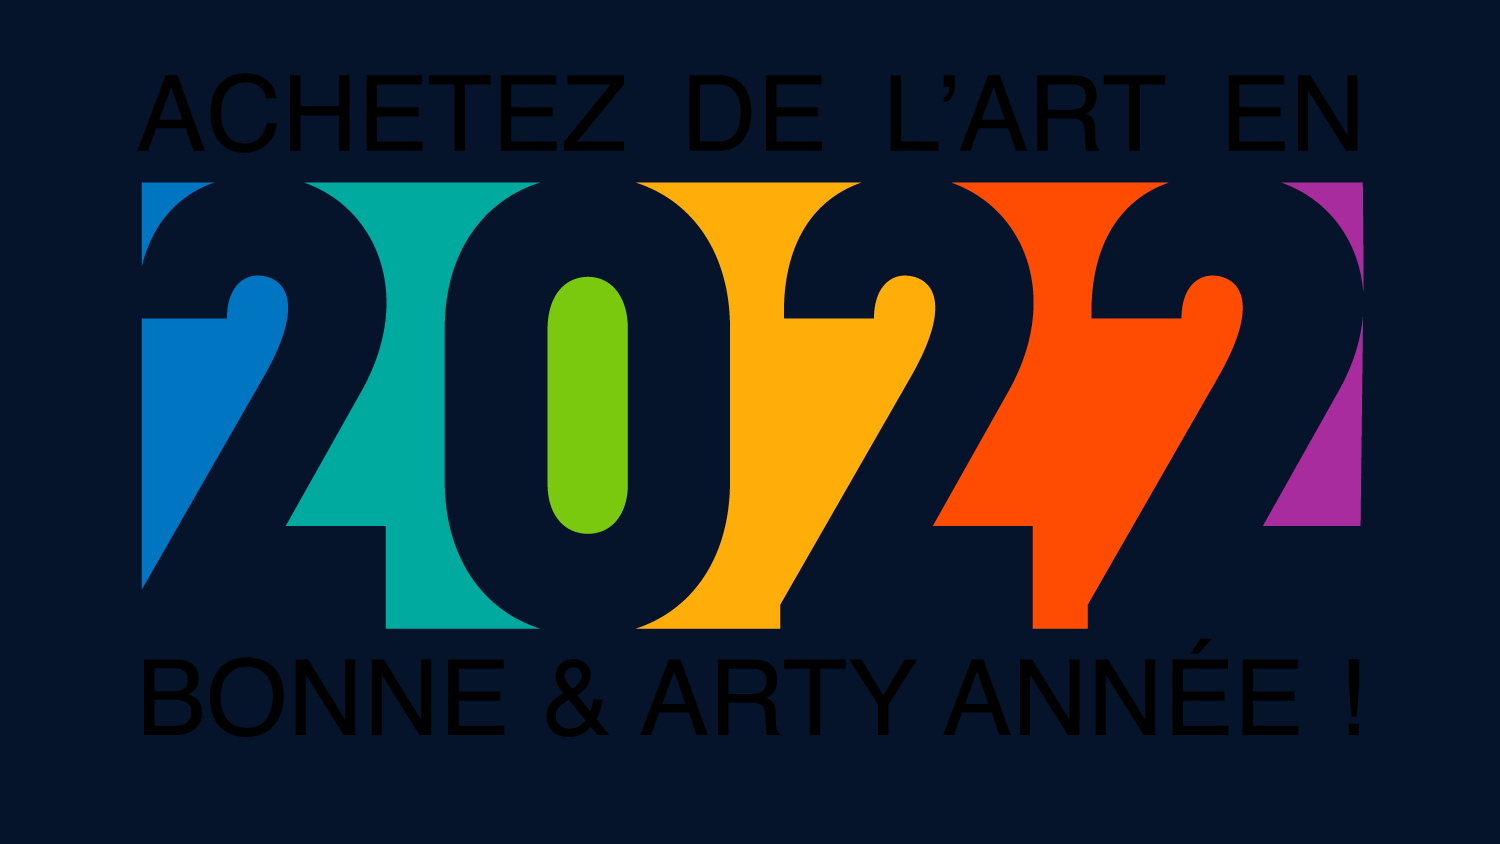 Achetez de l'Art en 2022 !